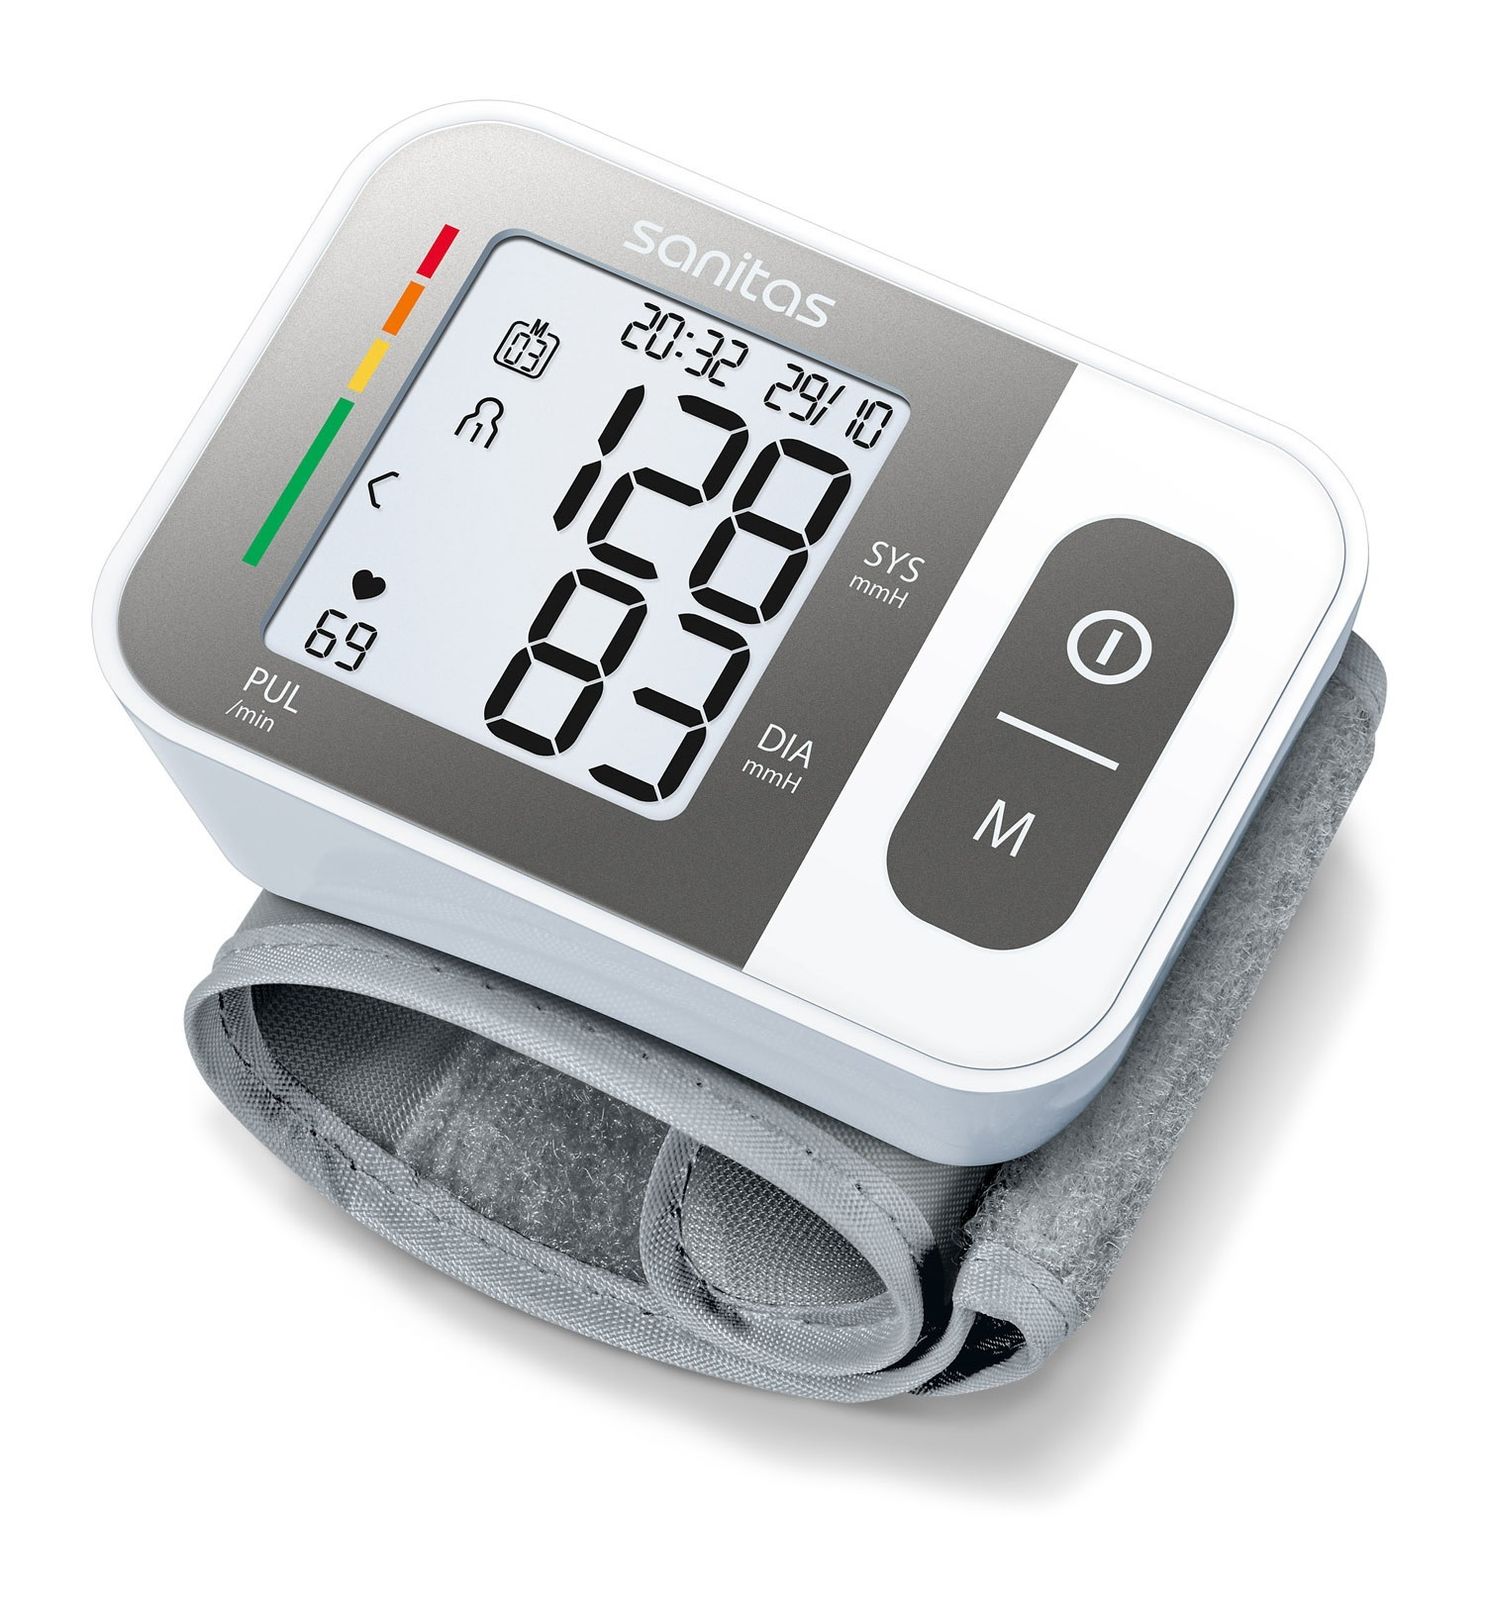 Sanitas SBC 15 Handgelenk-Blutdruckmessgerät | Weltbild.de